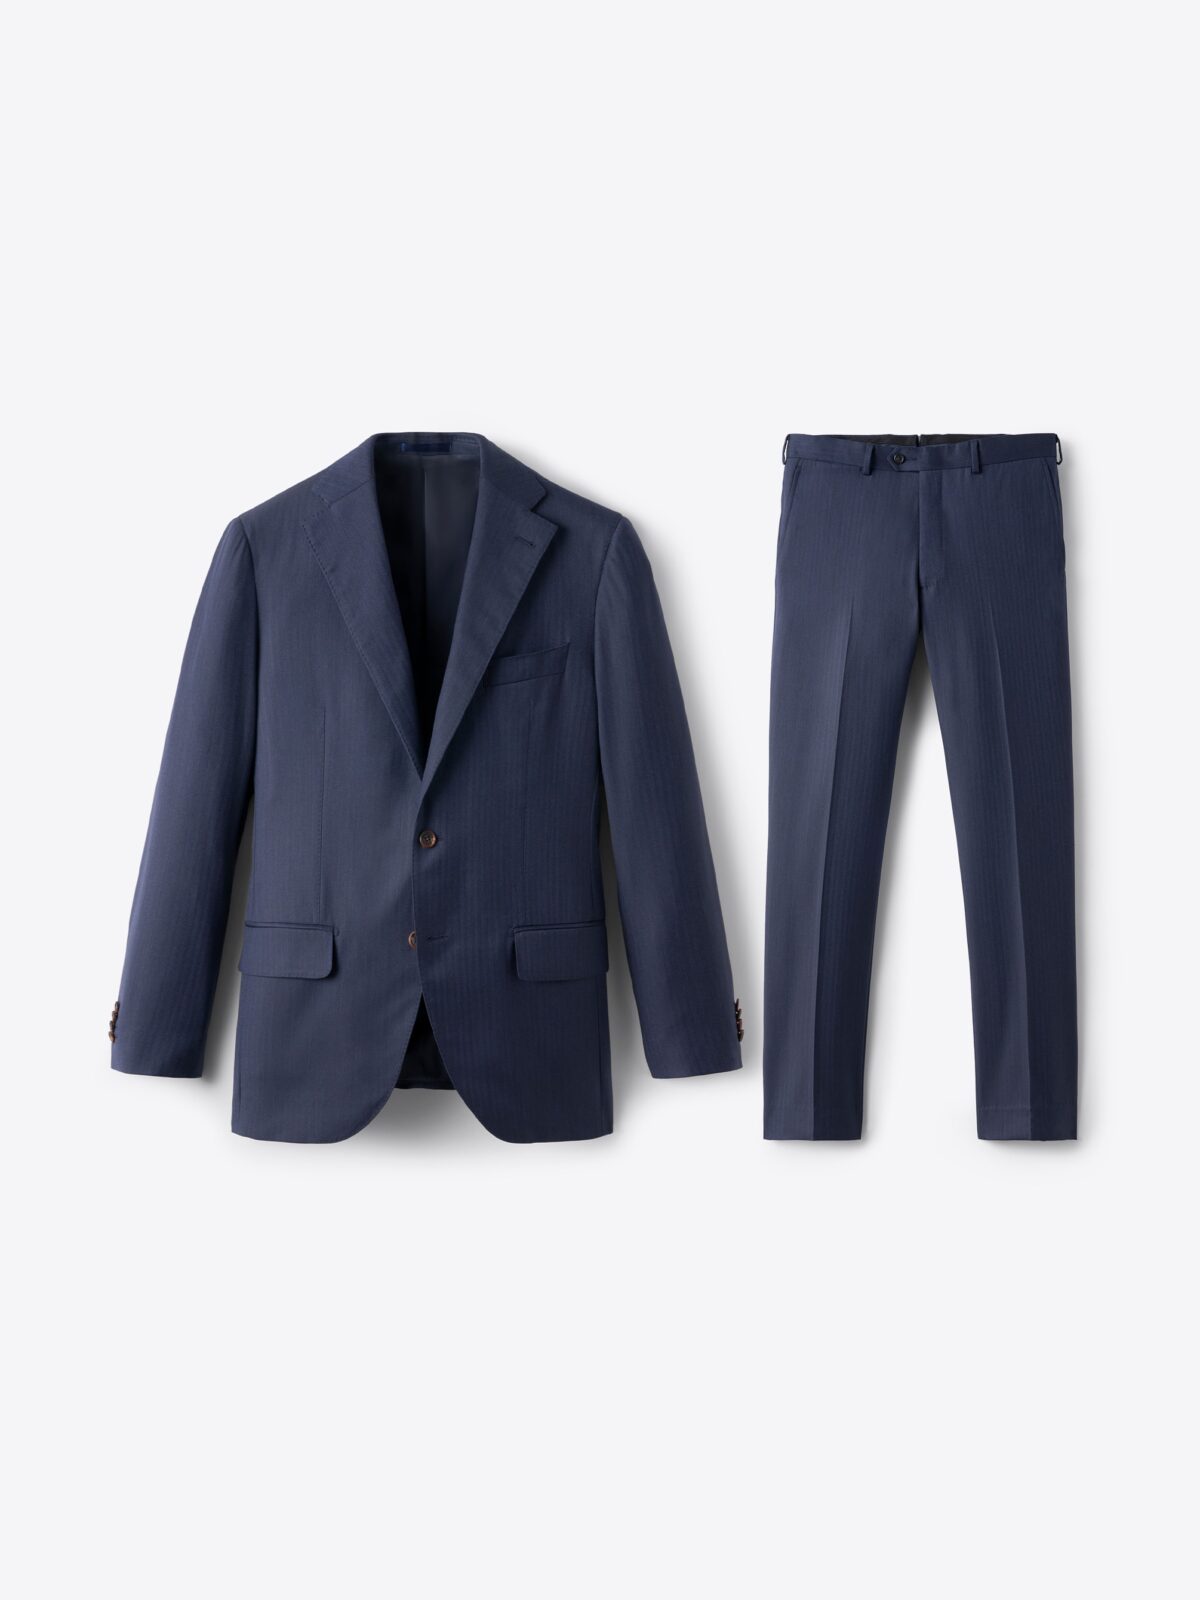 Loro Piana Fabric S150s Navy Herringbone Mercer Suit